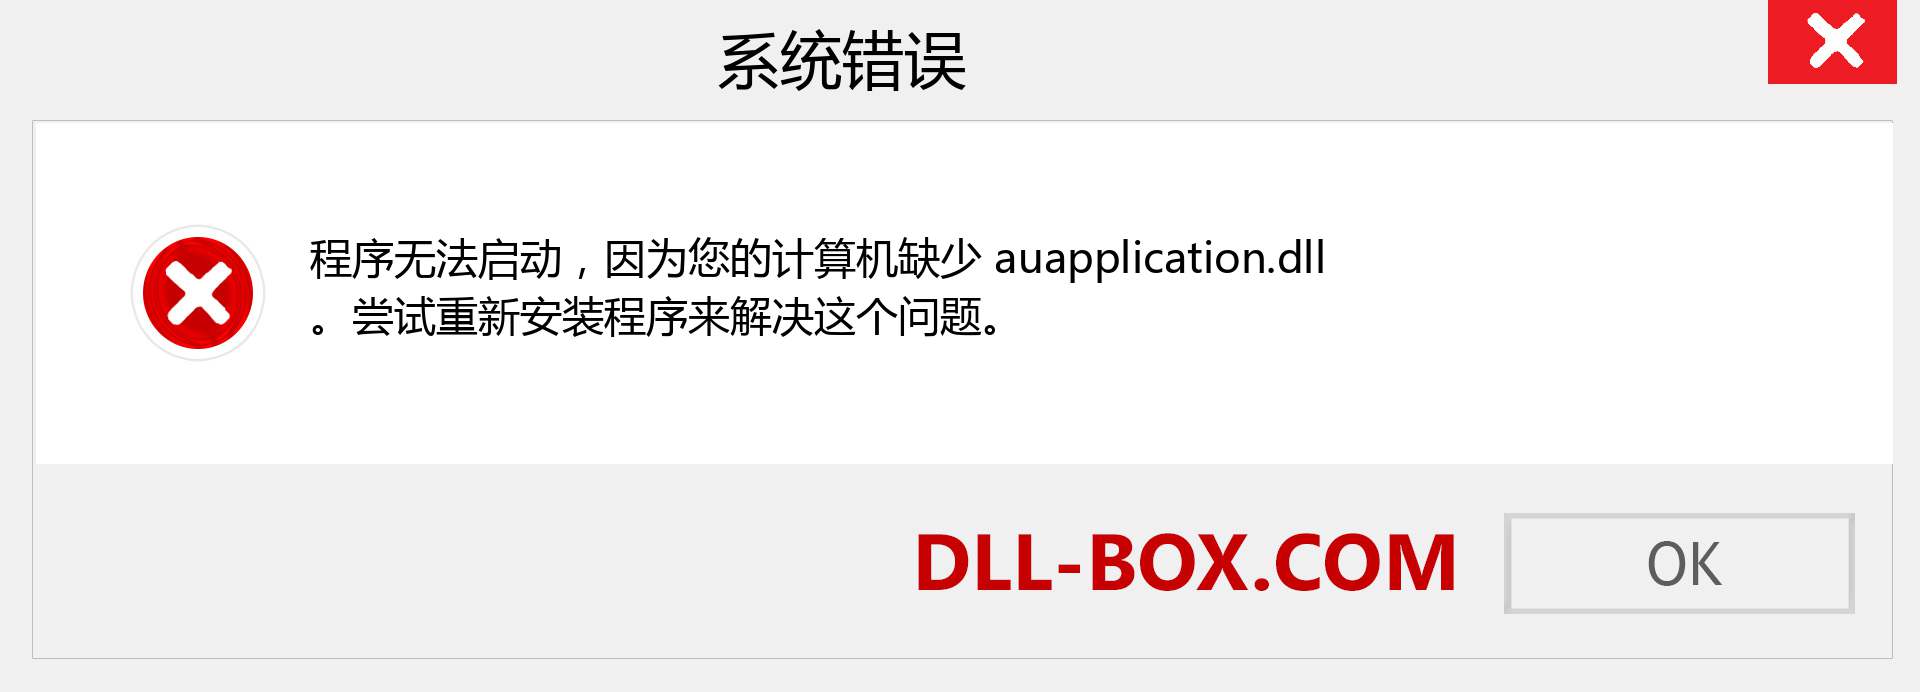 auapplication.dll 文件丢失？。 适用于 Windows 7、8、10 的下载 - 修复 Windows、照片、图像上的 auapplication dll 丢失错误